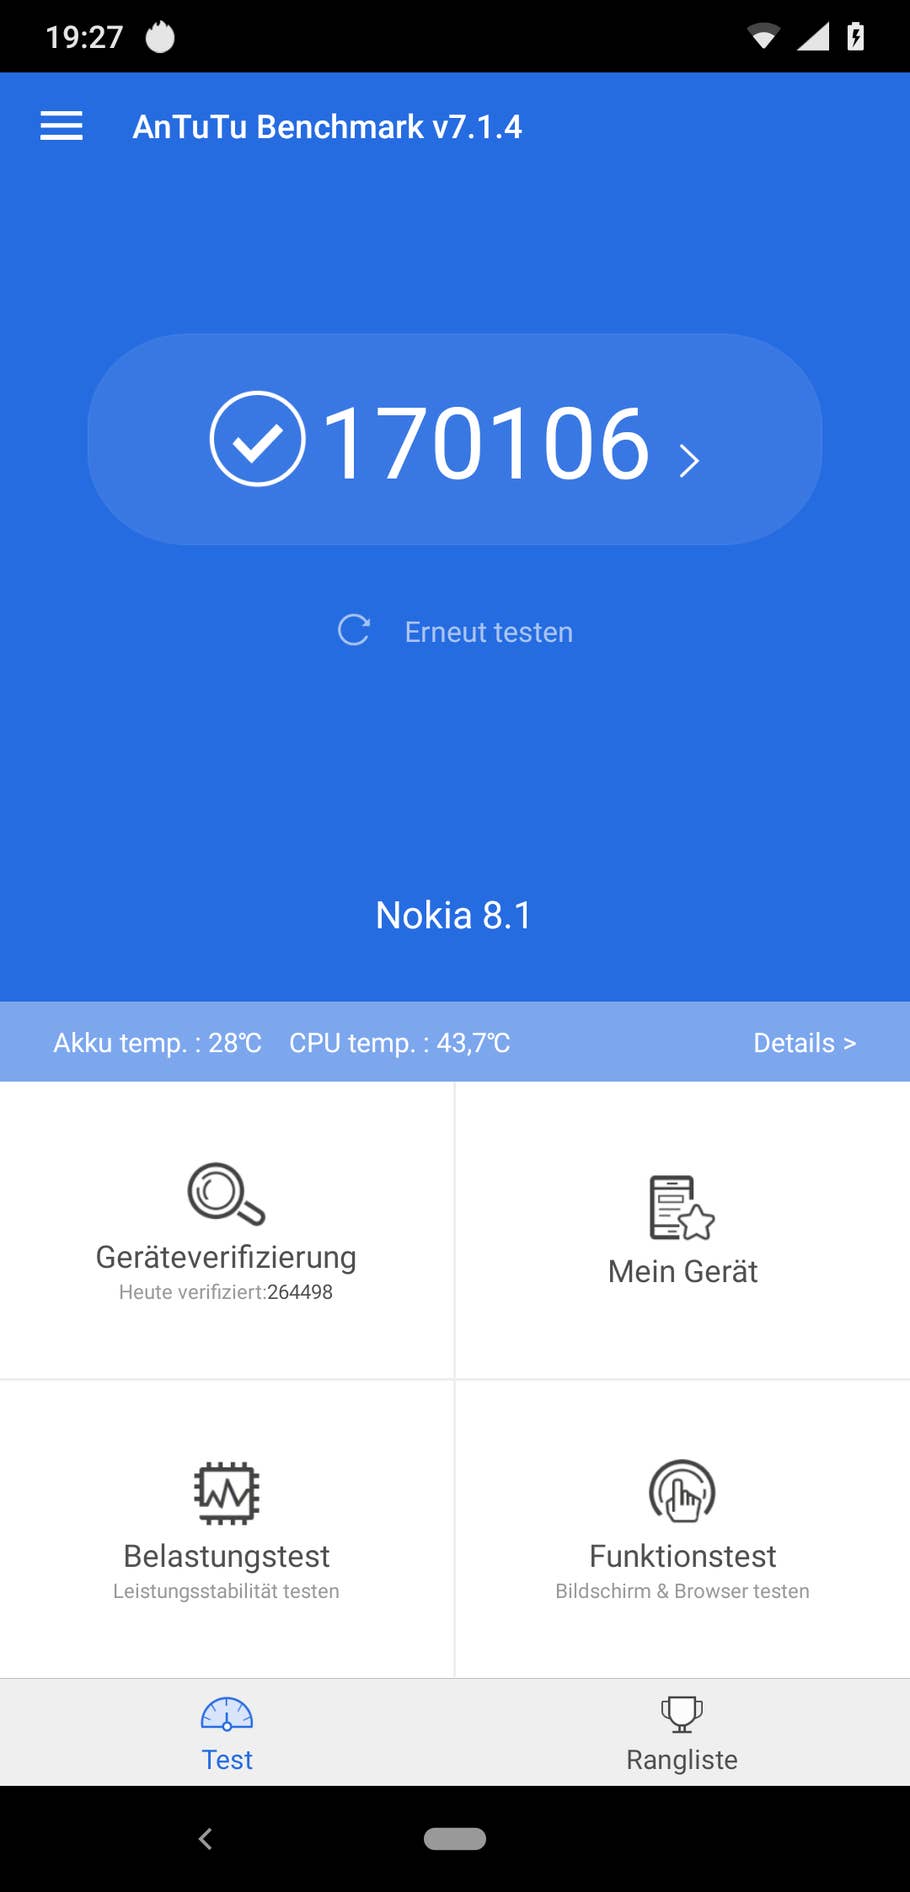 Benchmarktest mit dem Nokia 8.1